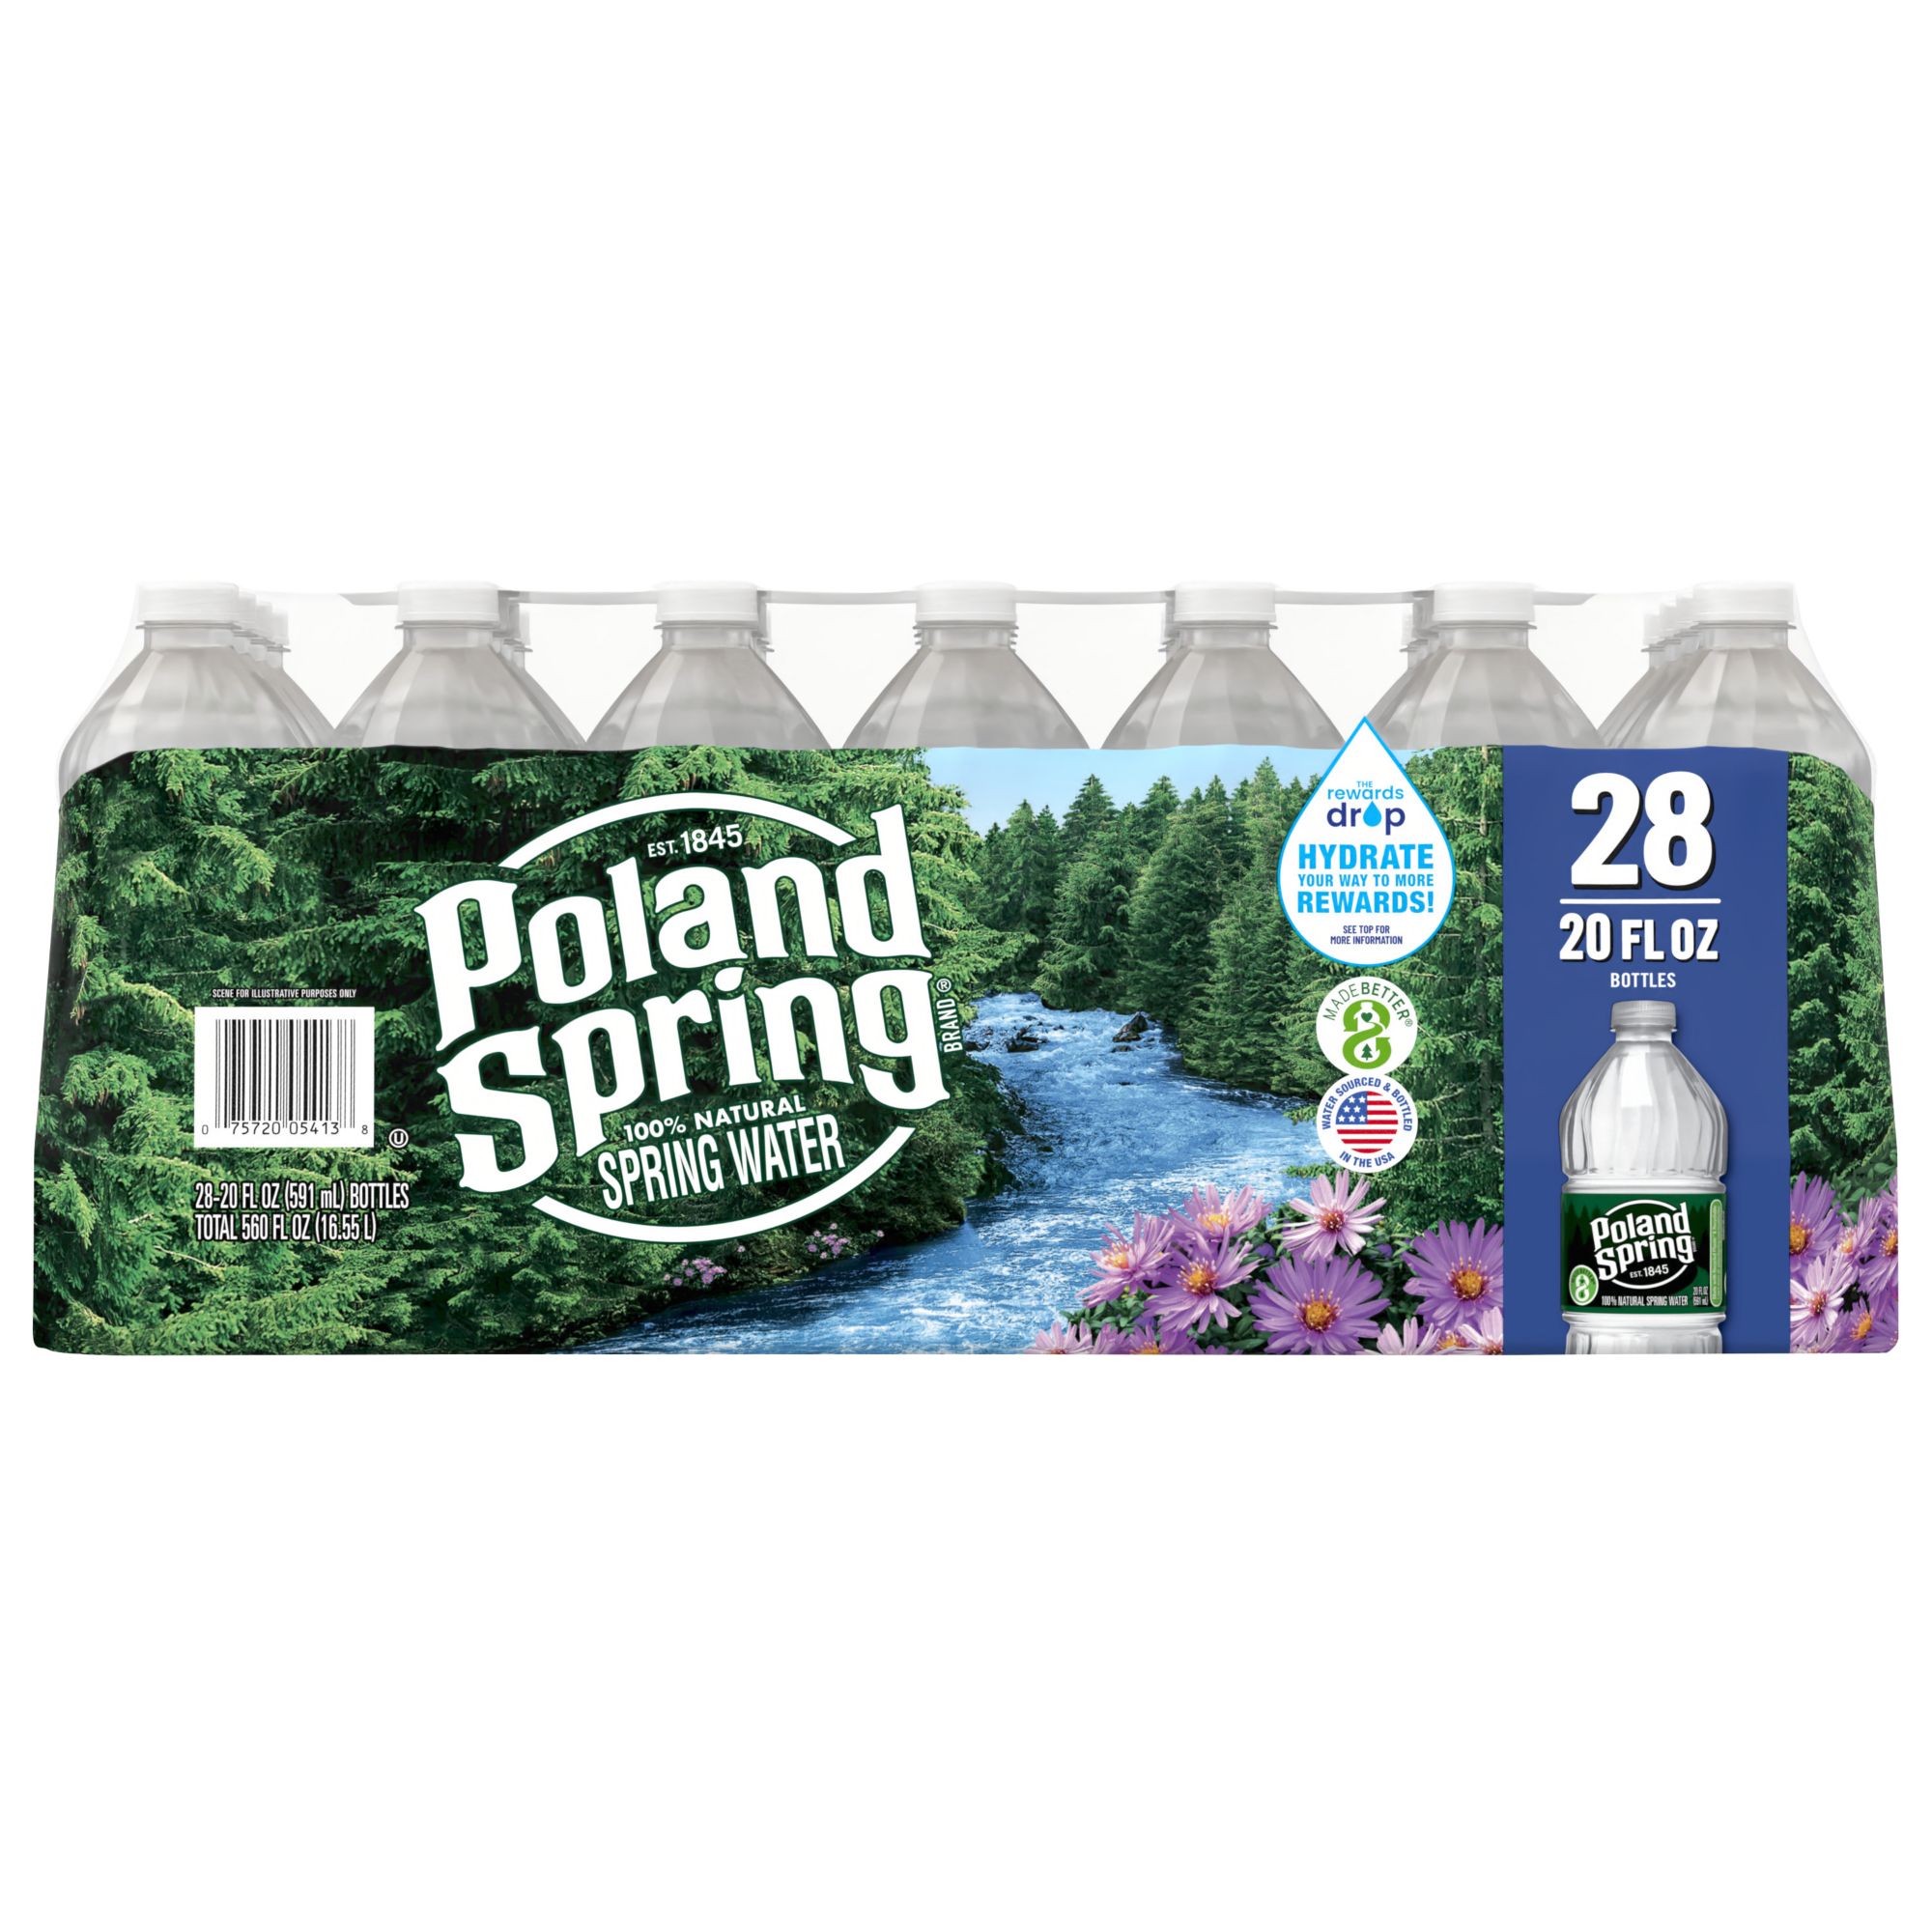 Poland Spring 100% Natural Spring Water, Deposit, 28 pk./20 oz.